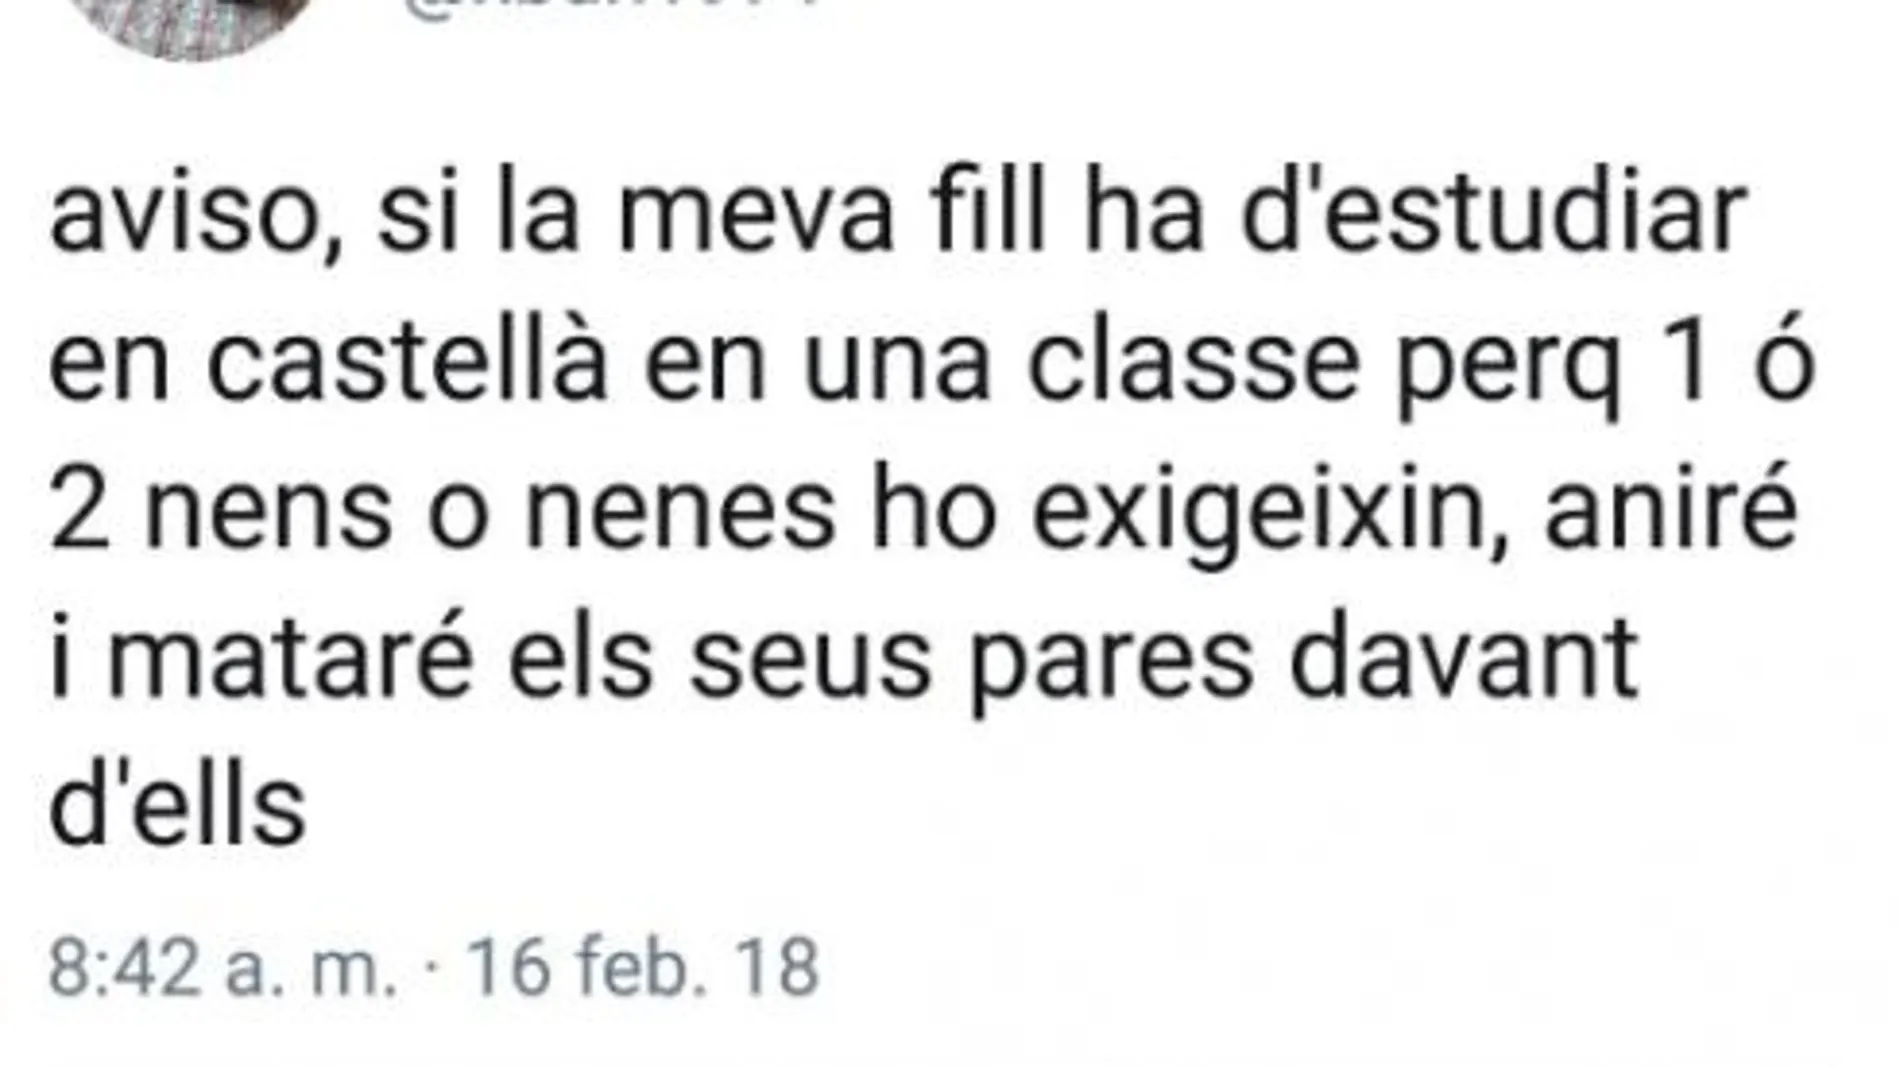 «Si mi hija ha de estudiar castellano en clase porque uno o dos niños lo exijan mataré a sus padres»